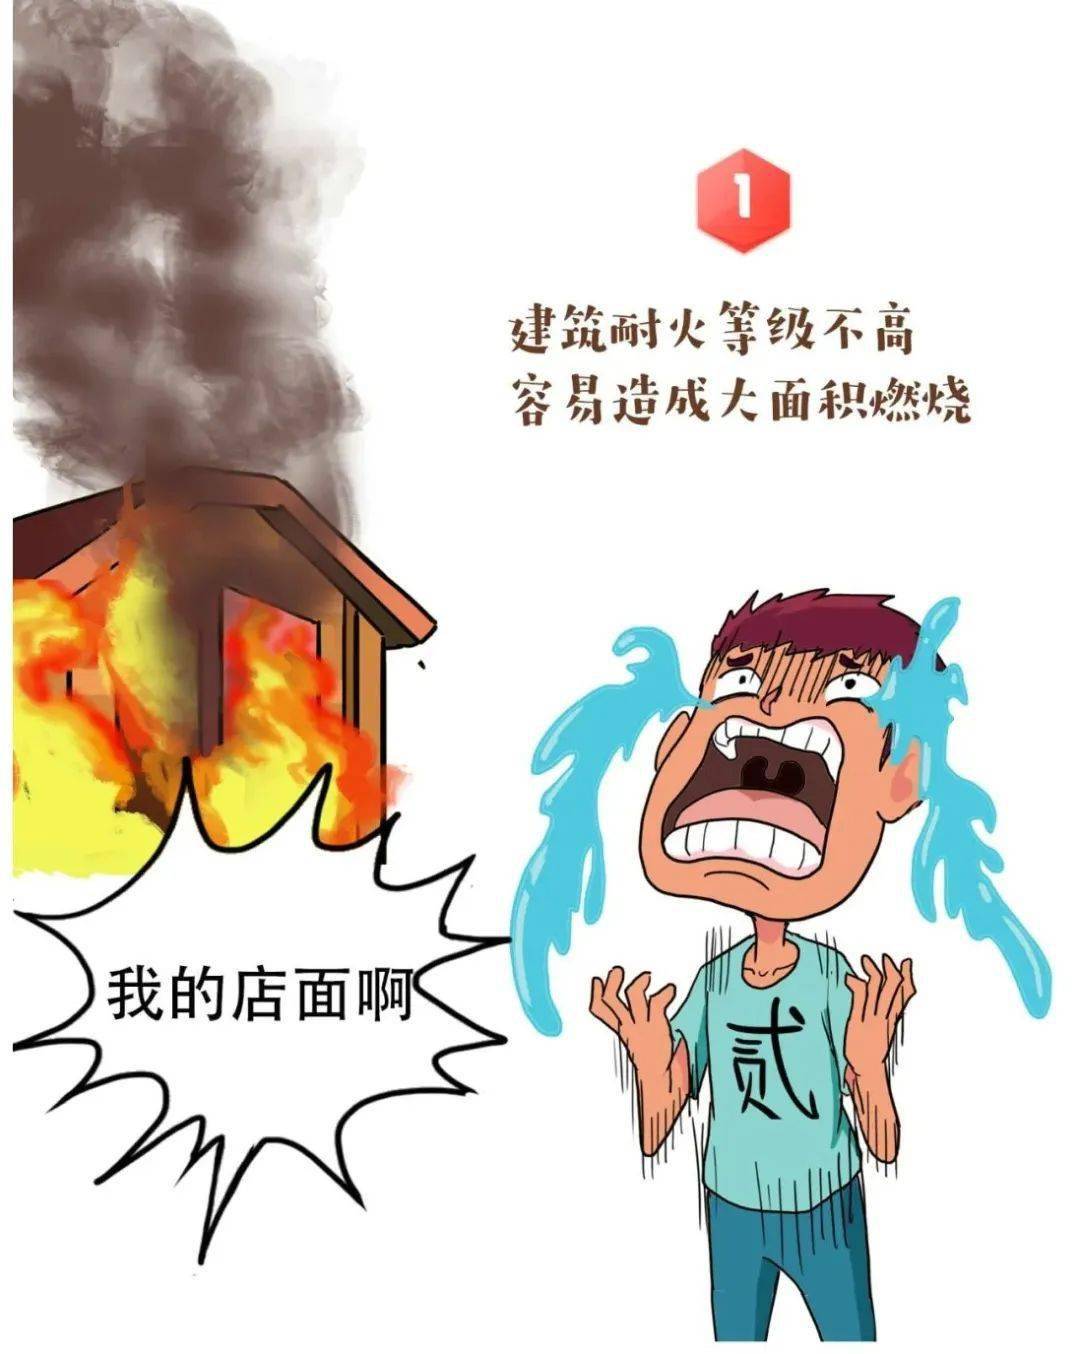 河南安陽廠房大火 當局已控制犯罪嫌疑人 - 中華時報China Times-全球華人媒體